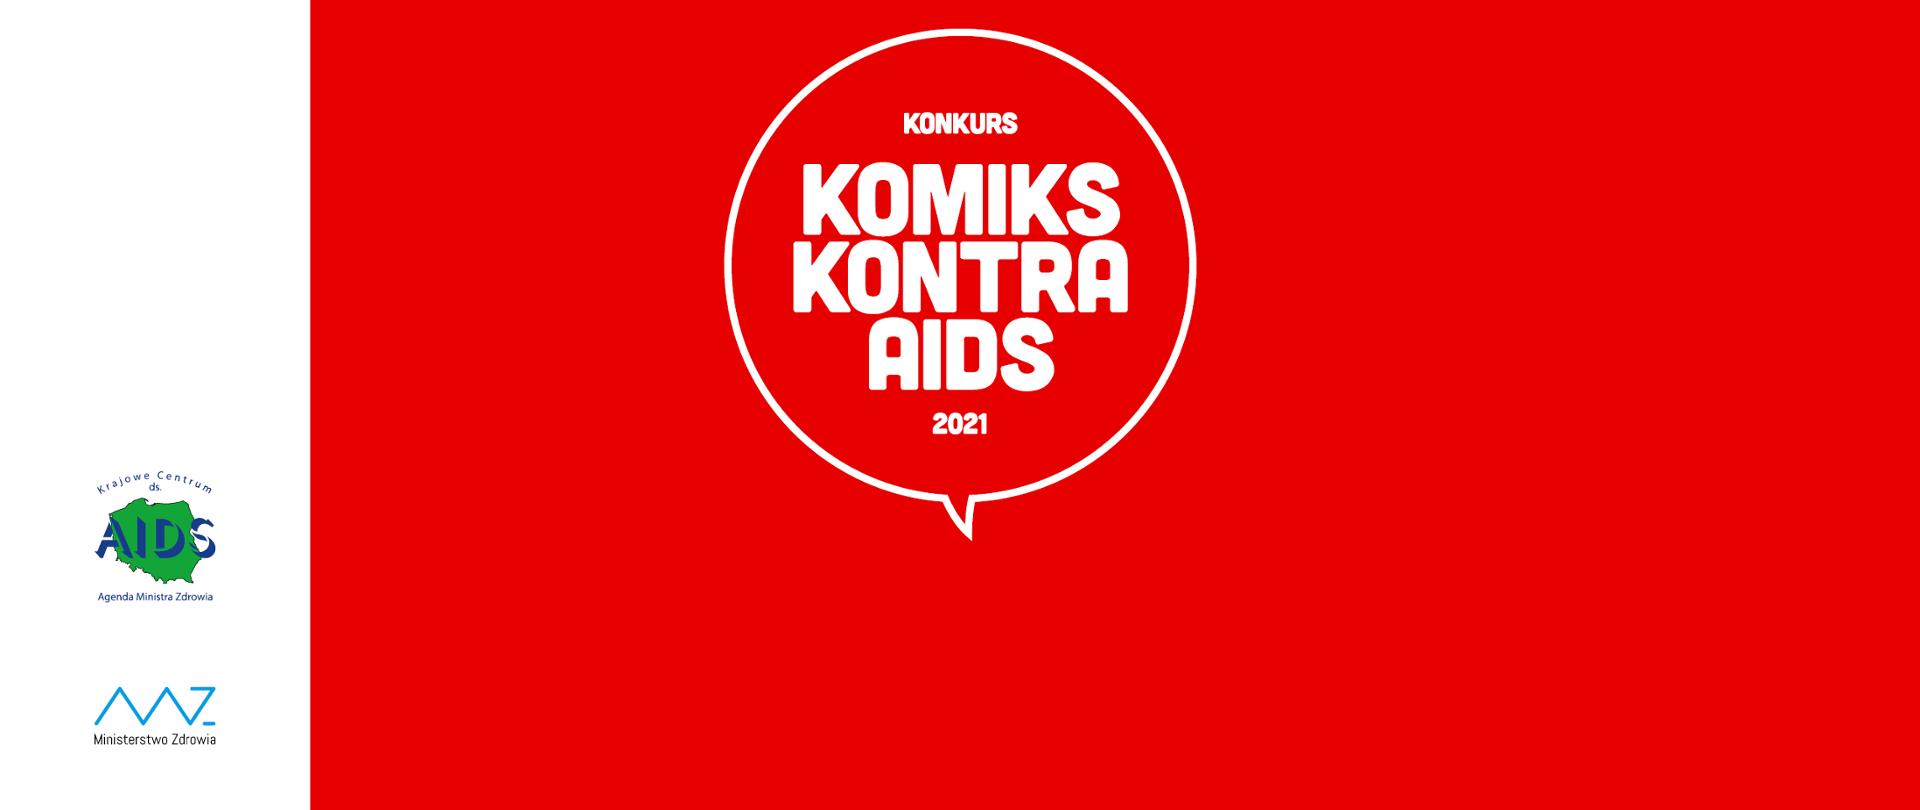 Plansza w kolorze czerwonym z napisem "Komiks kontr aids 2021" w białej obwódce